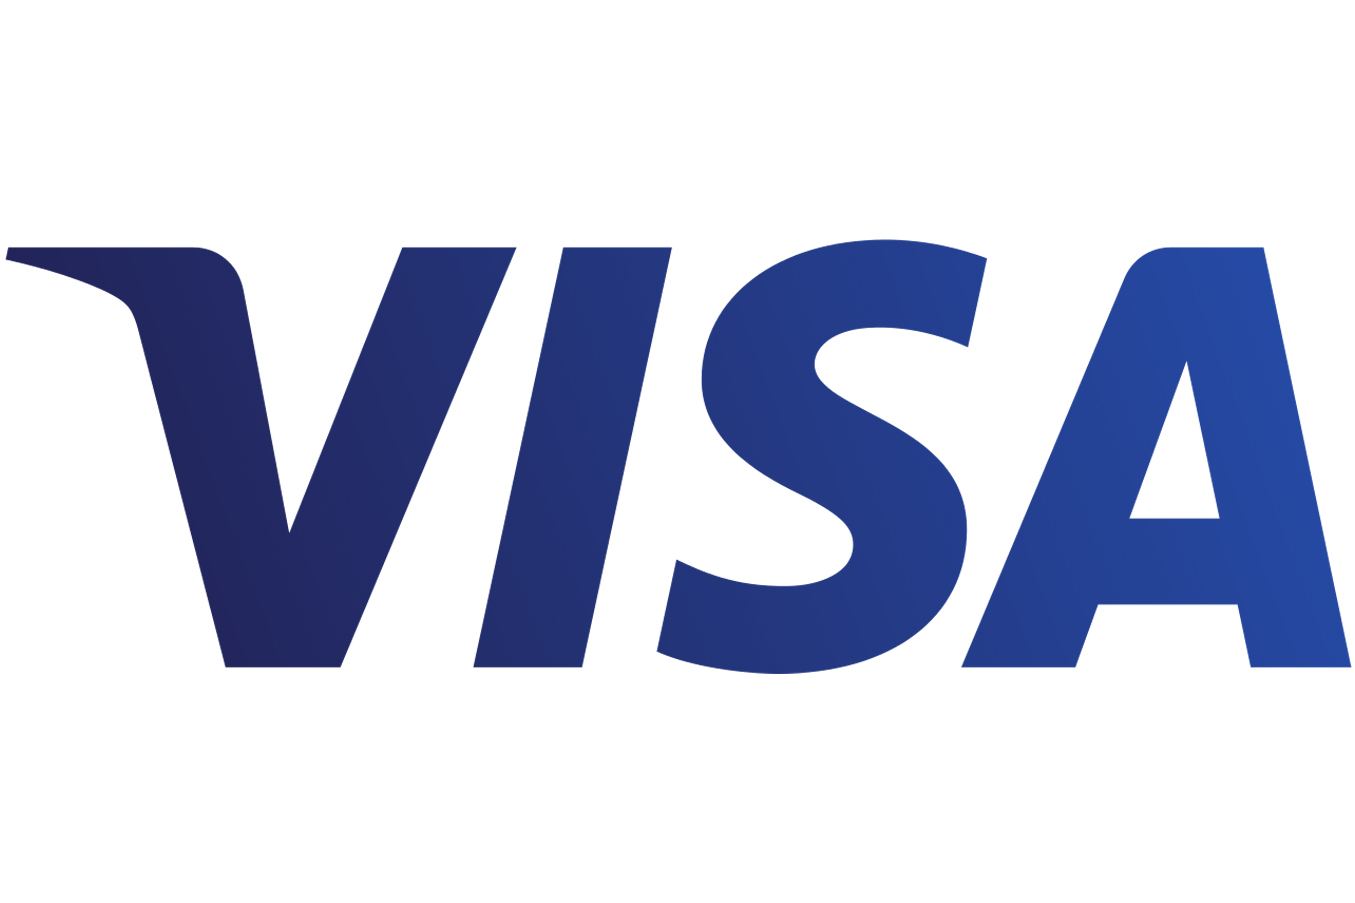 Visa заложила основу для запуска глобальных платежных инструментов в Азербайджане